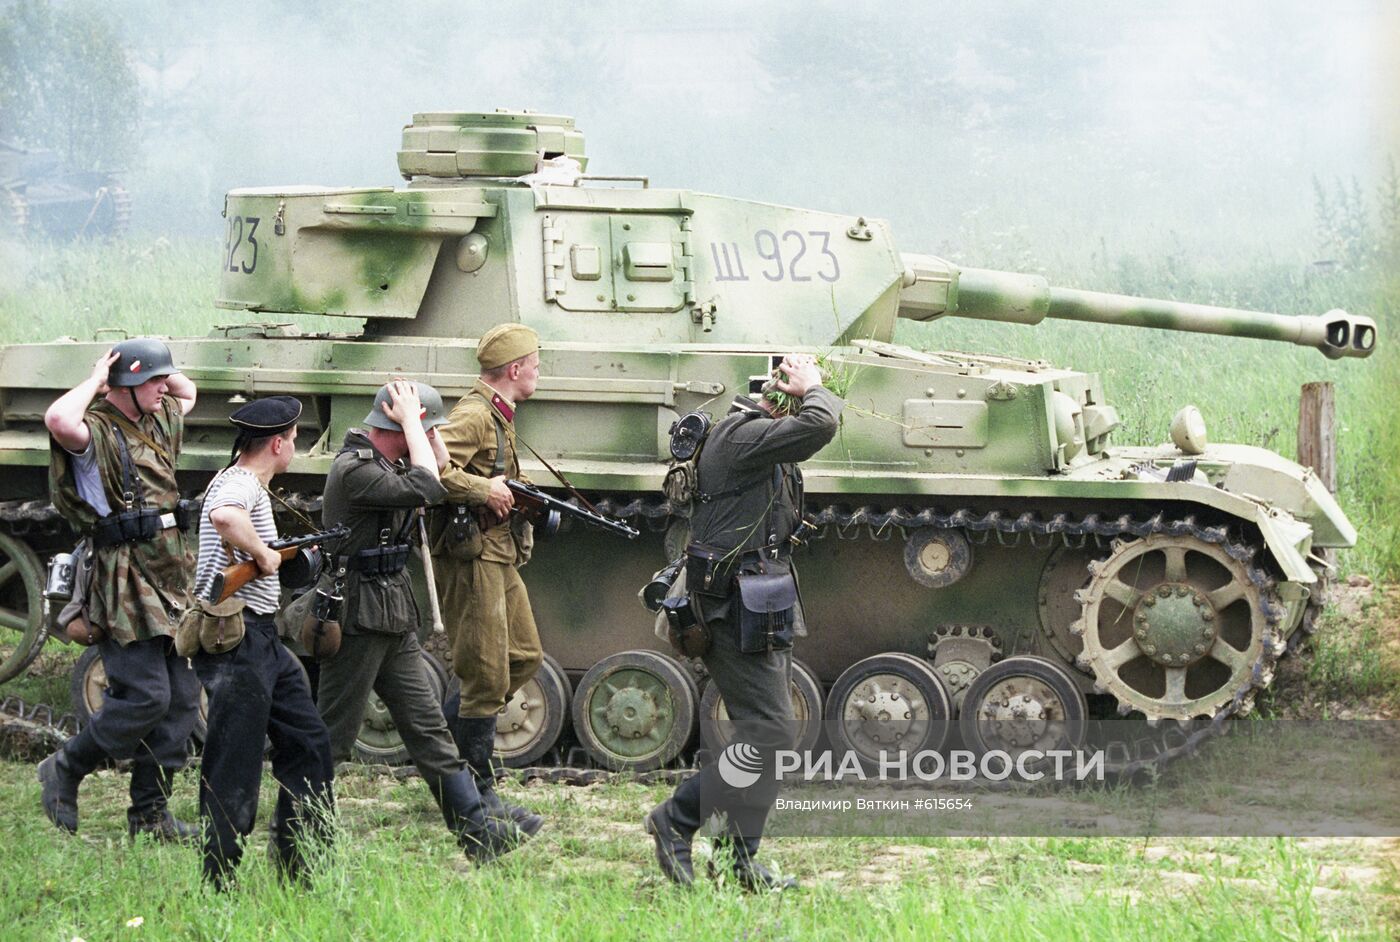 Сцена из исторической реконструкции Курской битвы